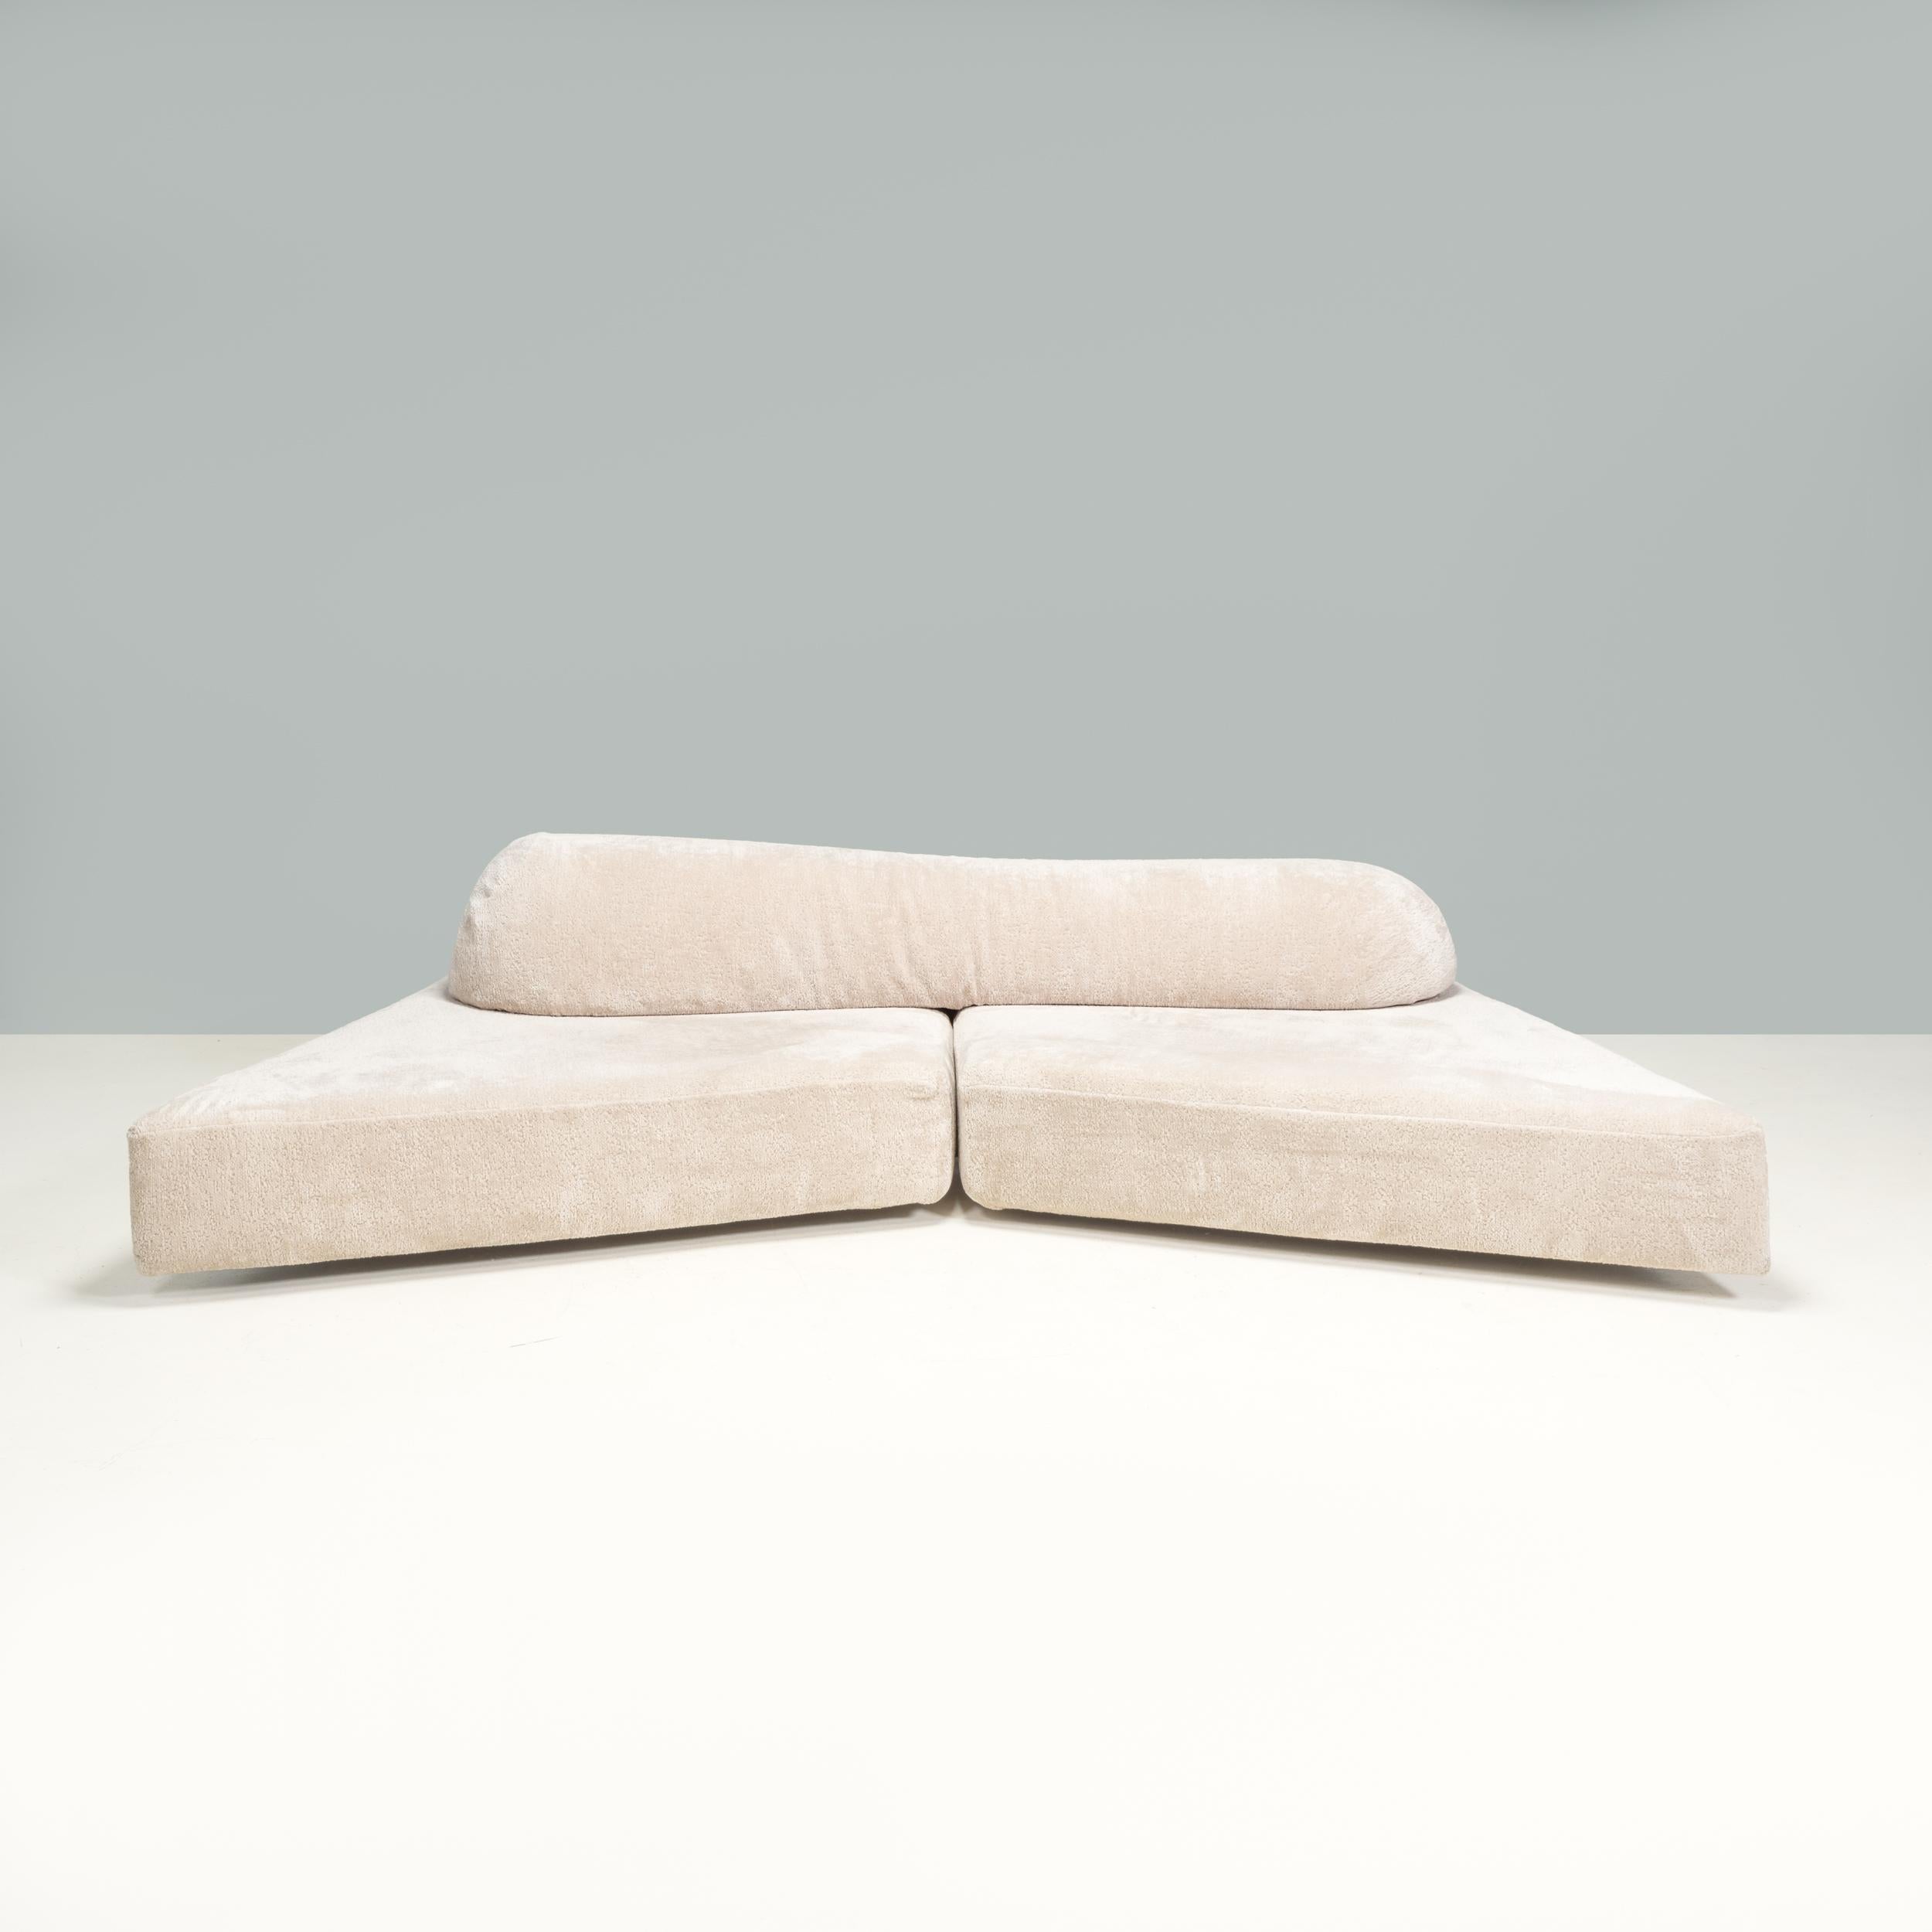 Das von Francesco Binfaré für Edra entworfene Sofa On The Rocks wurde von den Archipelen des Mittelmeers inspiriert, um ein einzigartiges zeitgenössisches Design zu schaffen, in dessen Mittelpunkt die Natur steht.

Das Sofa besteht aus zwei